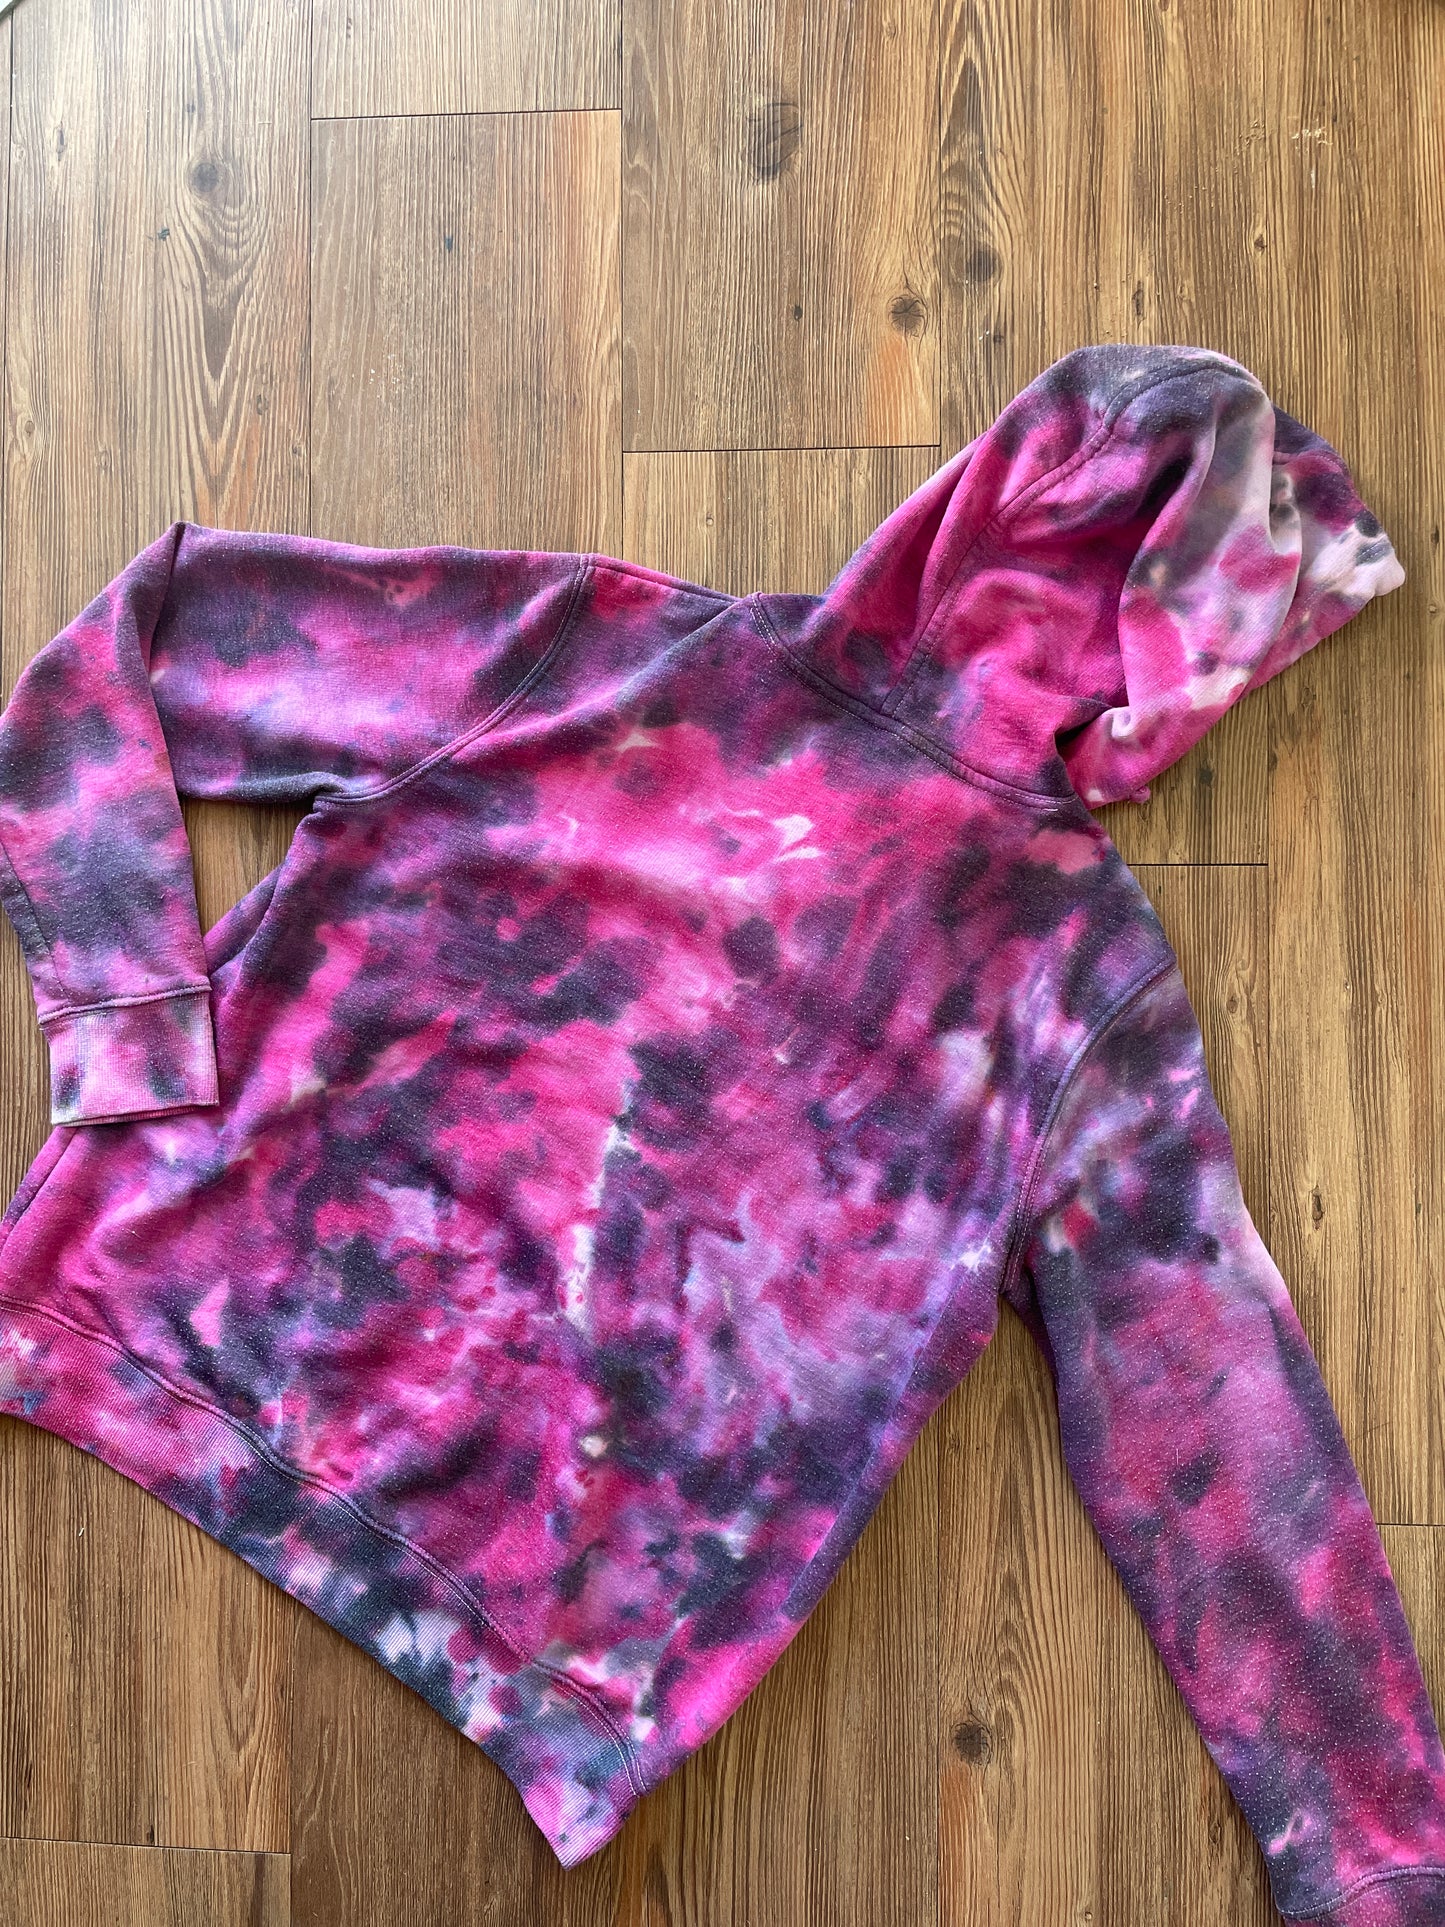 MEDIUM Women’s Pink and Black Galaxy Tie Dye Sweatshirt | Old Navy Crumpled Subtle Tie Dye Long Sleeve Hoodie